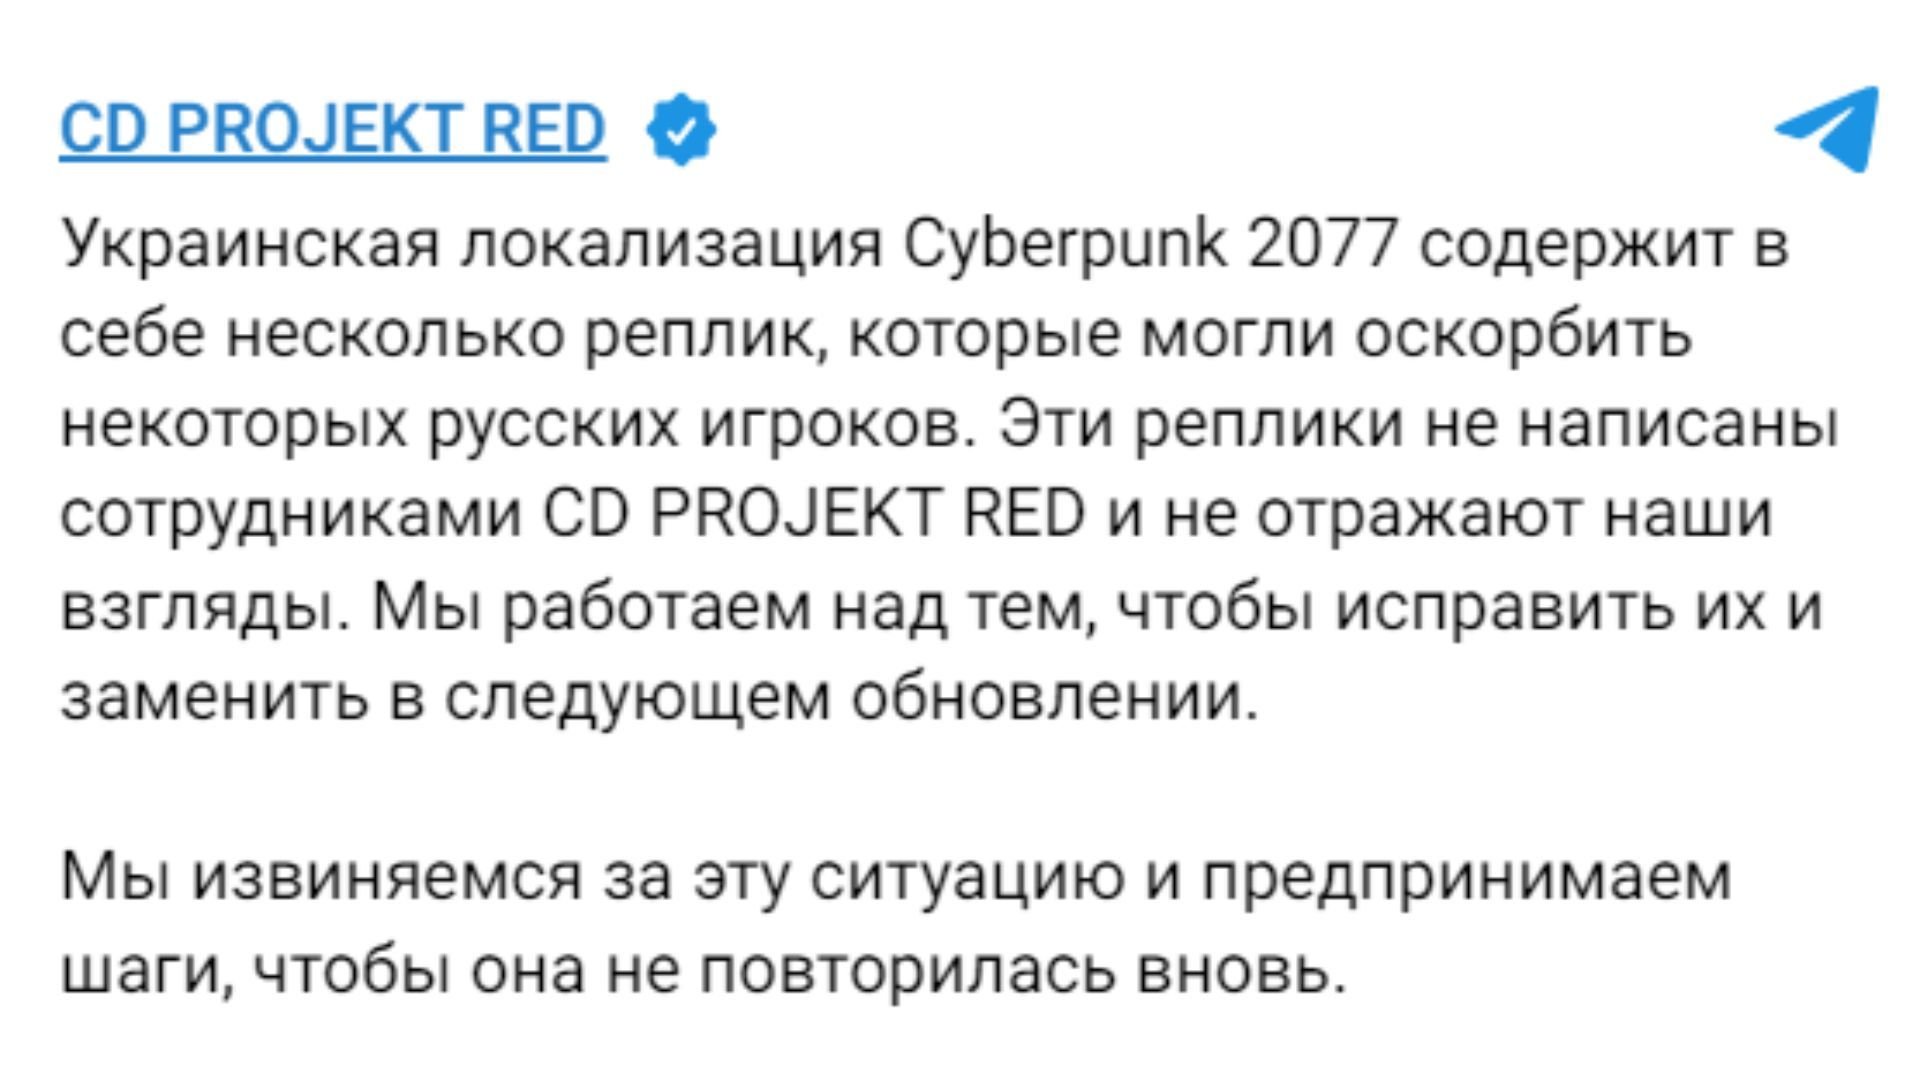 CD Project Red вибачилась перед росіянами за українську локалізацію